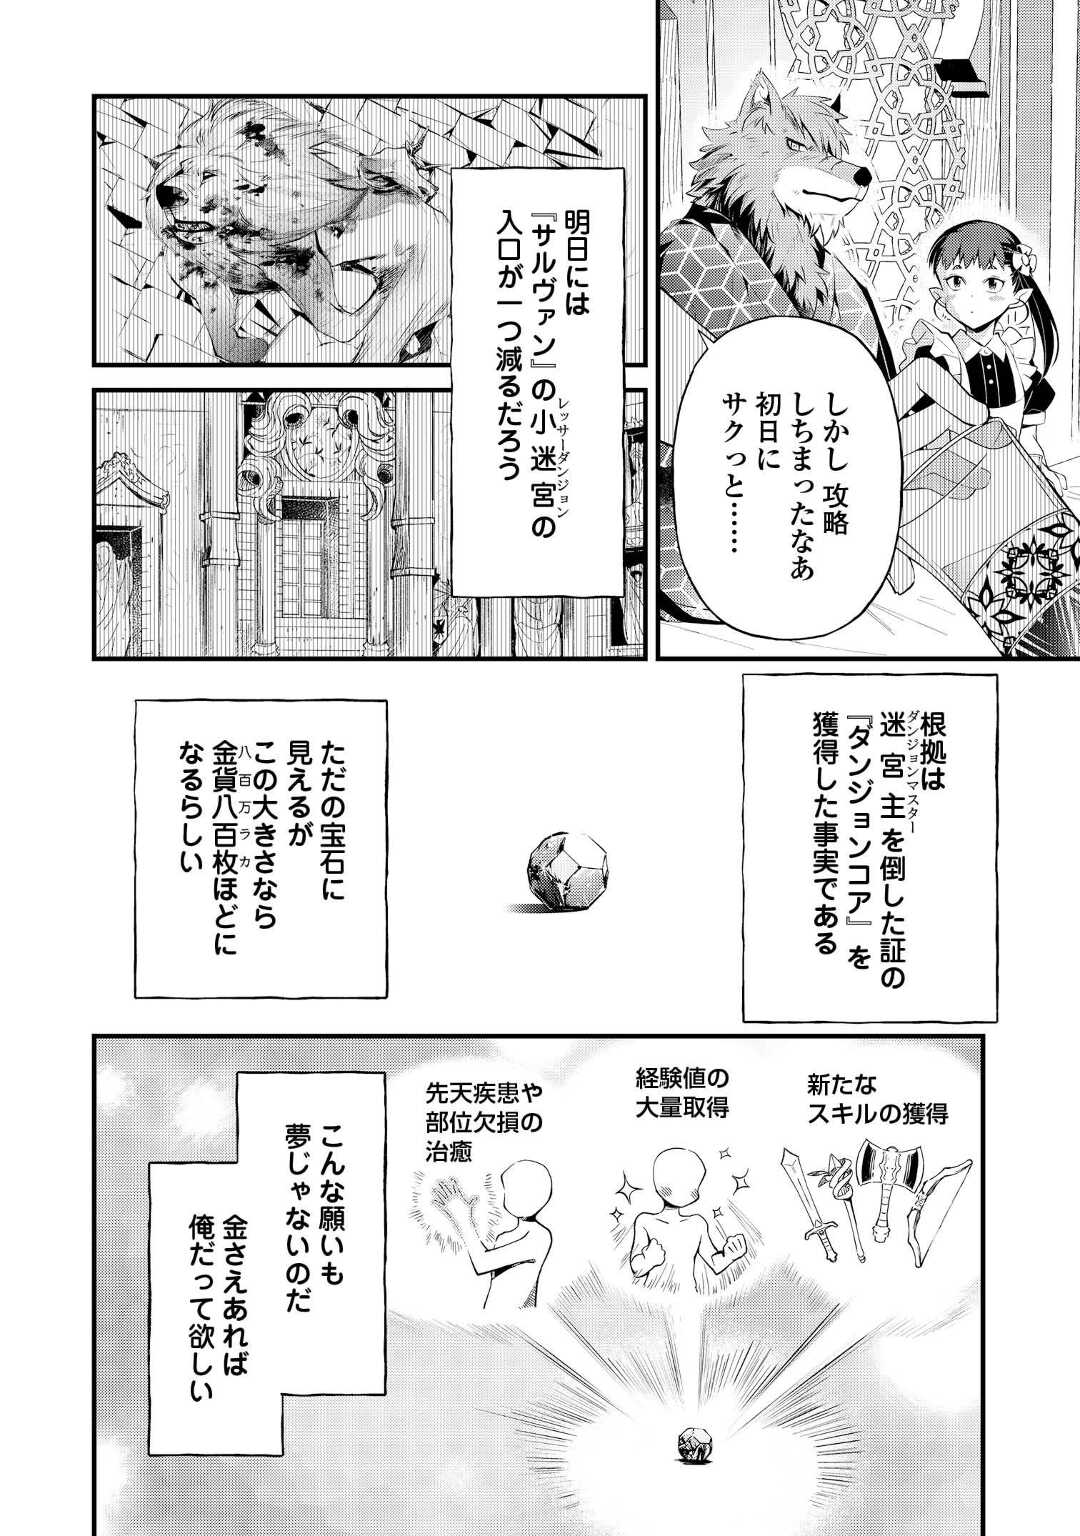 Ochikobore 1 Mahou Tsukai wa, Kyou mo Muishiki ni Cheat o Tsukau - Chapter 15 - Page 4